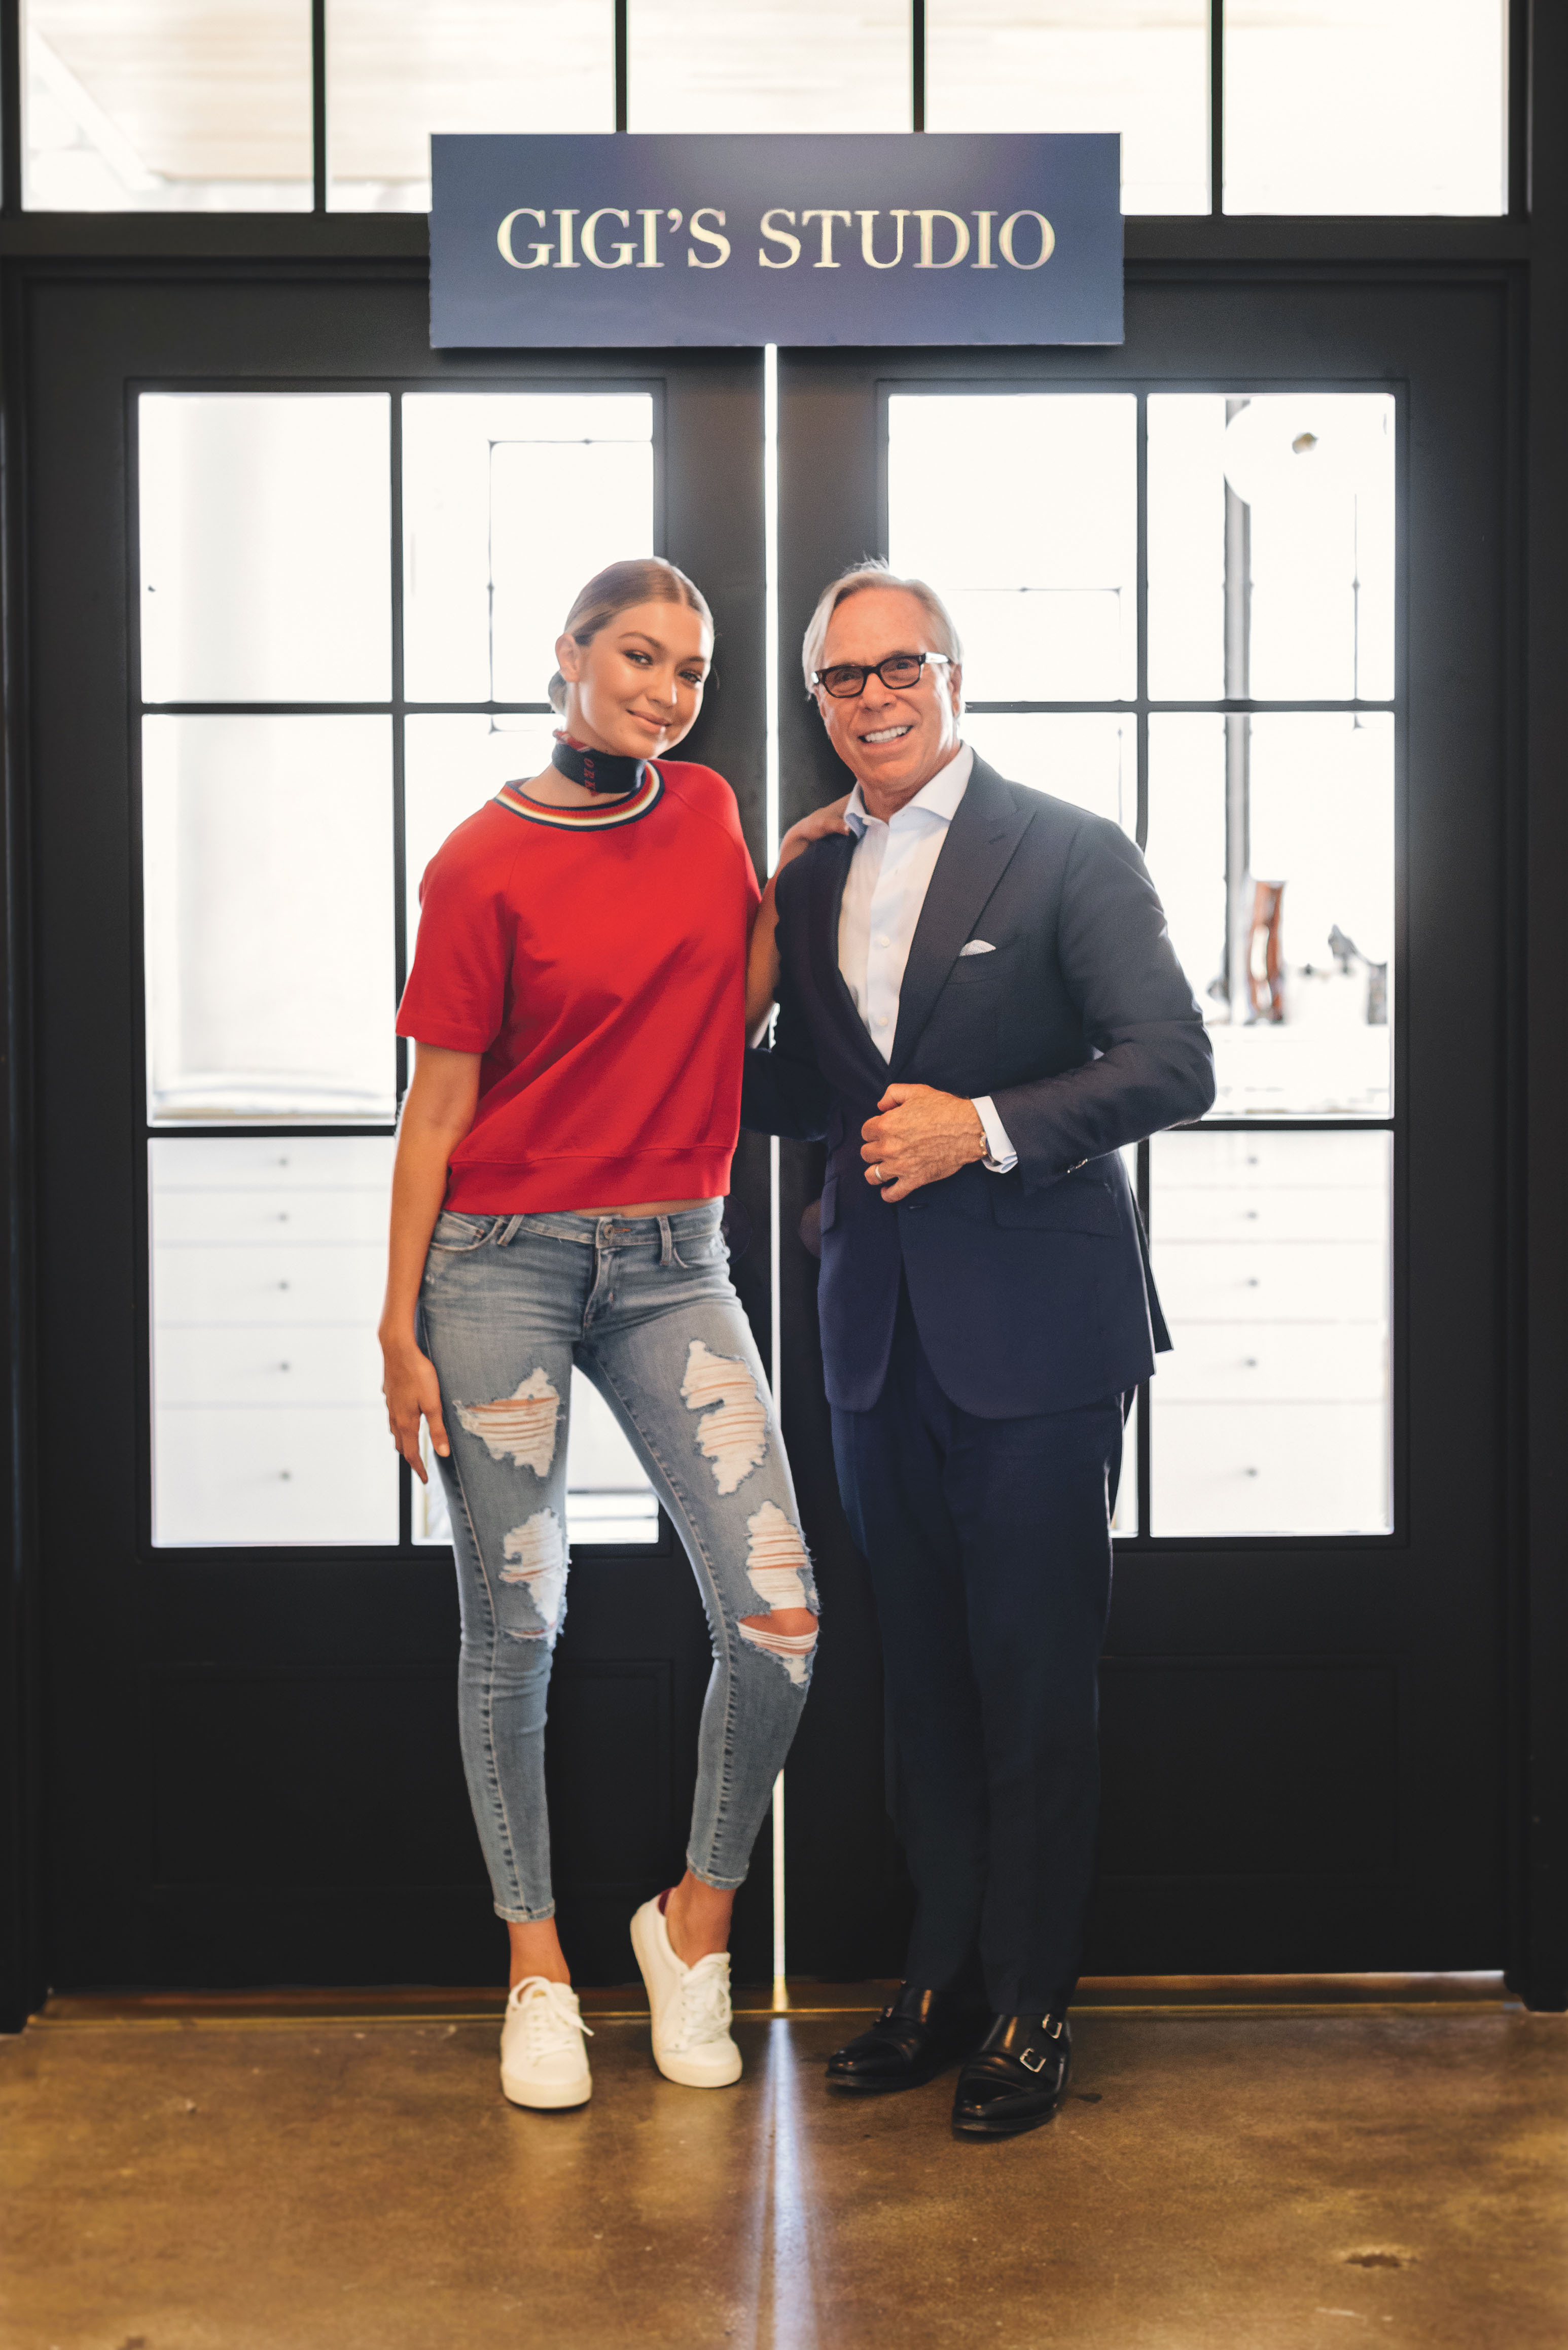 arbejde jøde Efterforskning Tommy Hilfiger Announces Gigi Hadid as Global Brand Ambassador for Tommy  Hilfiger | Business Wire